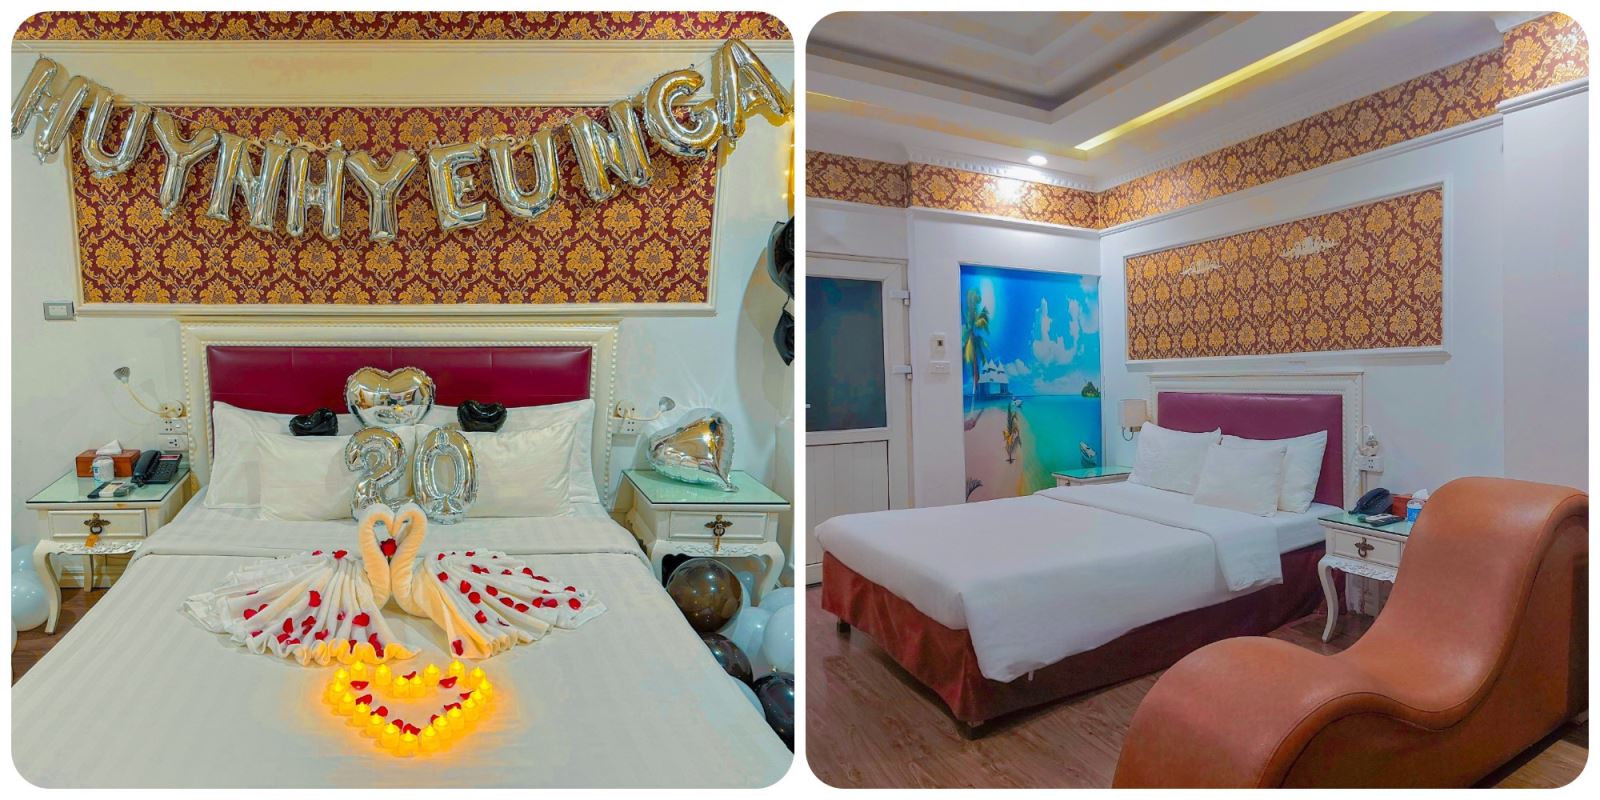 a25-hotel-25-dich-vong-hau-review-can-phong-mo-uoc-hanh-phuc-chung-doi